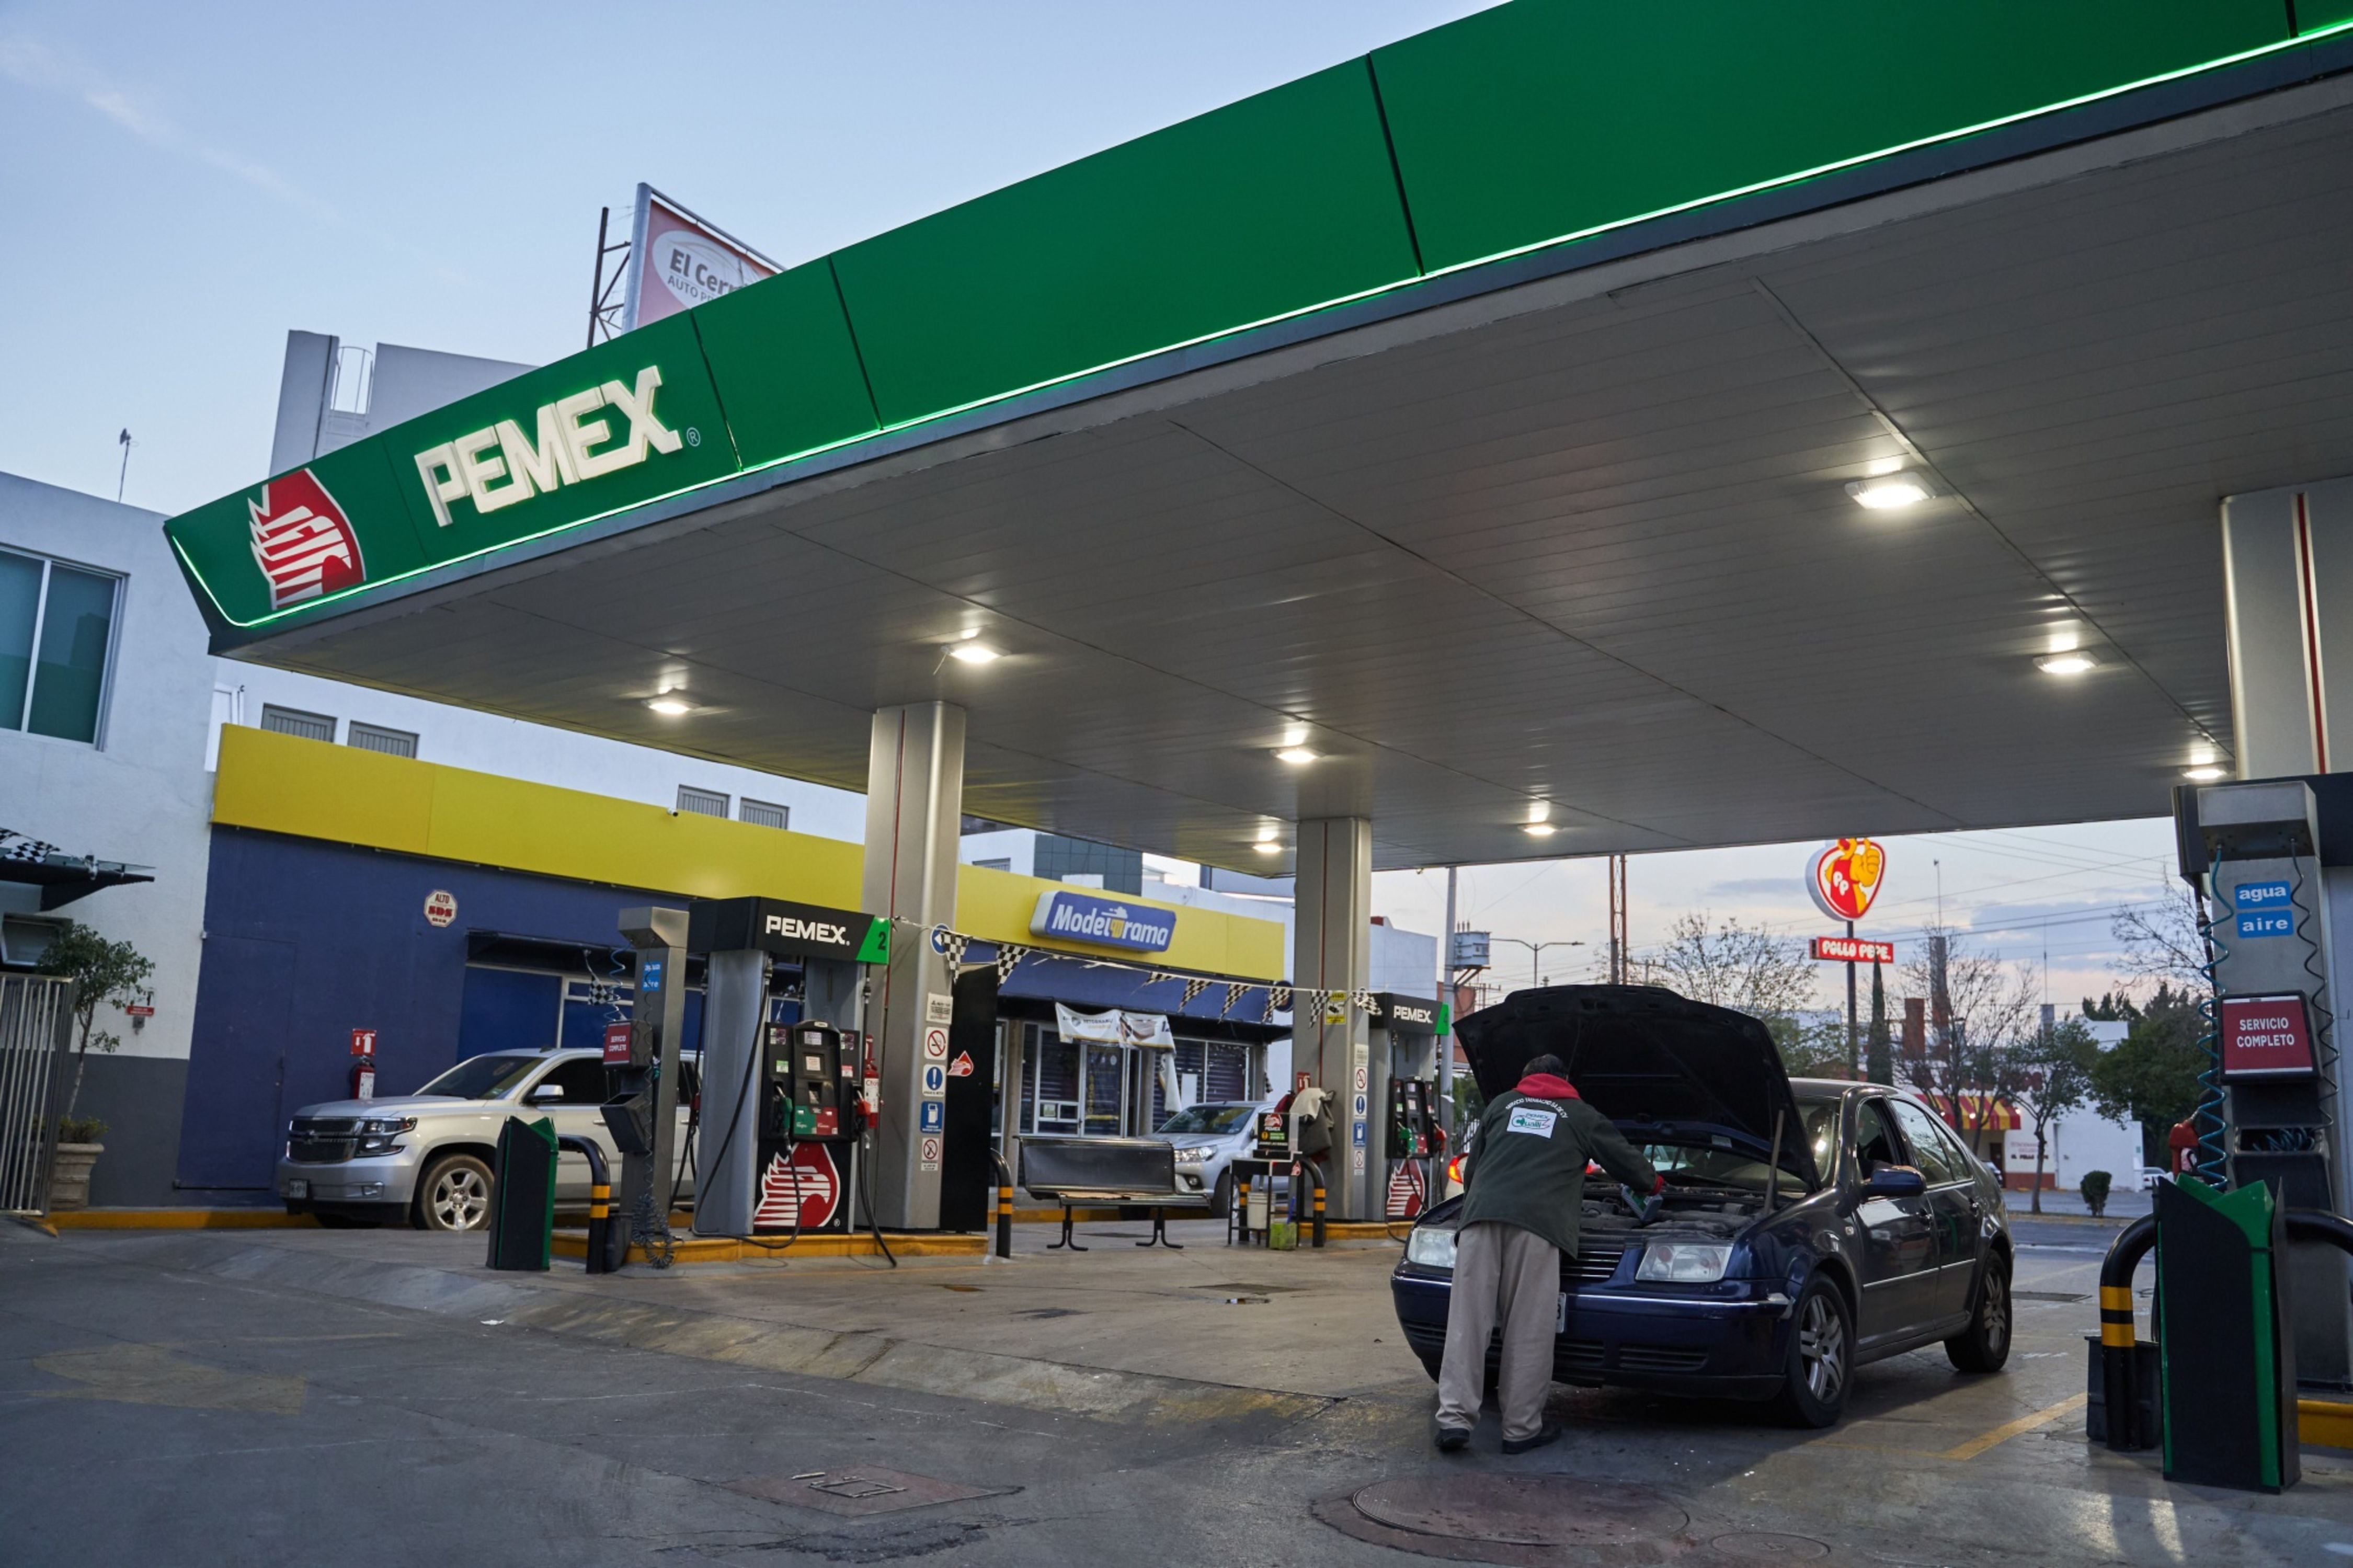 Hacienda estrena estímulos fiscales ‘de pilón’ para evitar ‘gasolinazos’ 